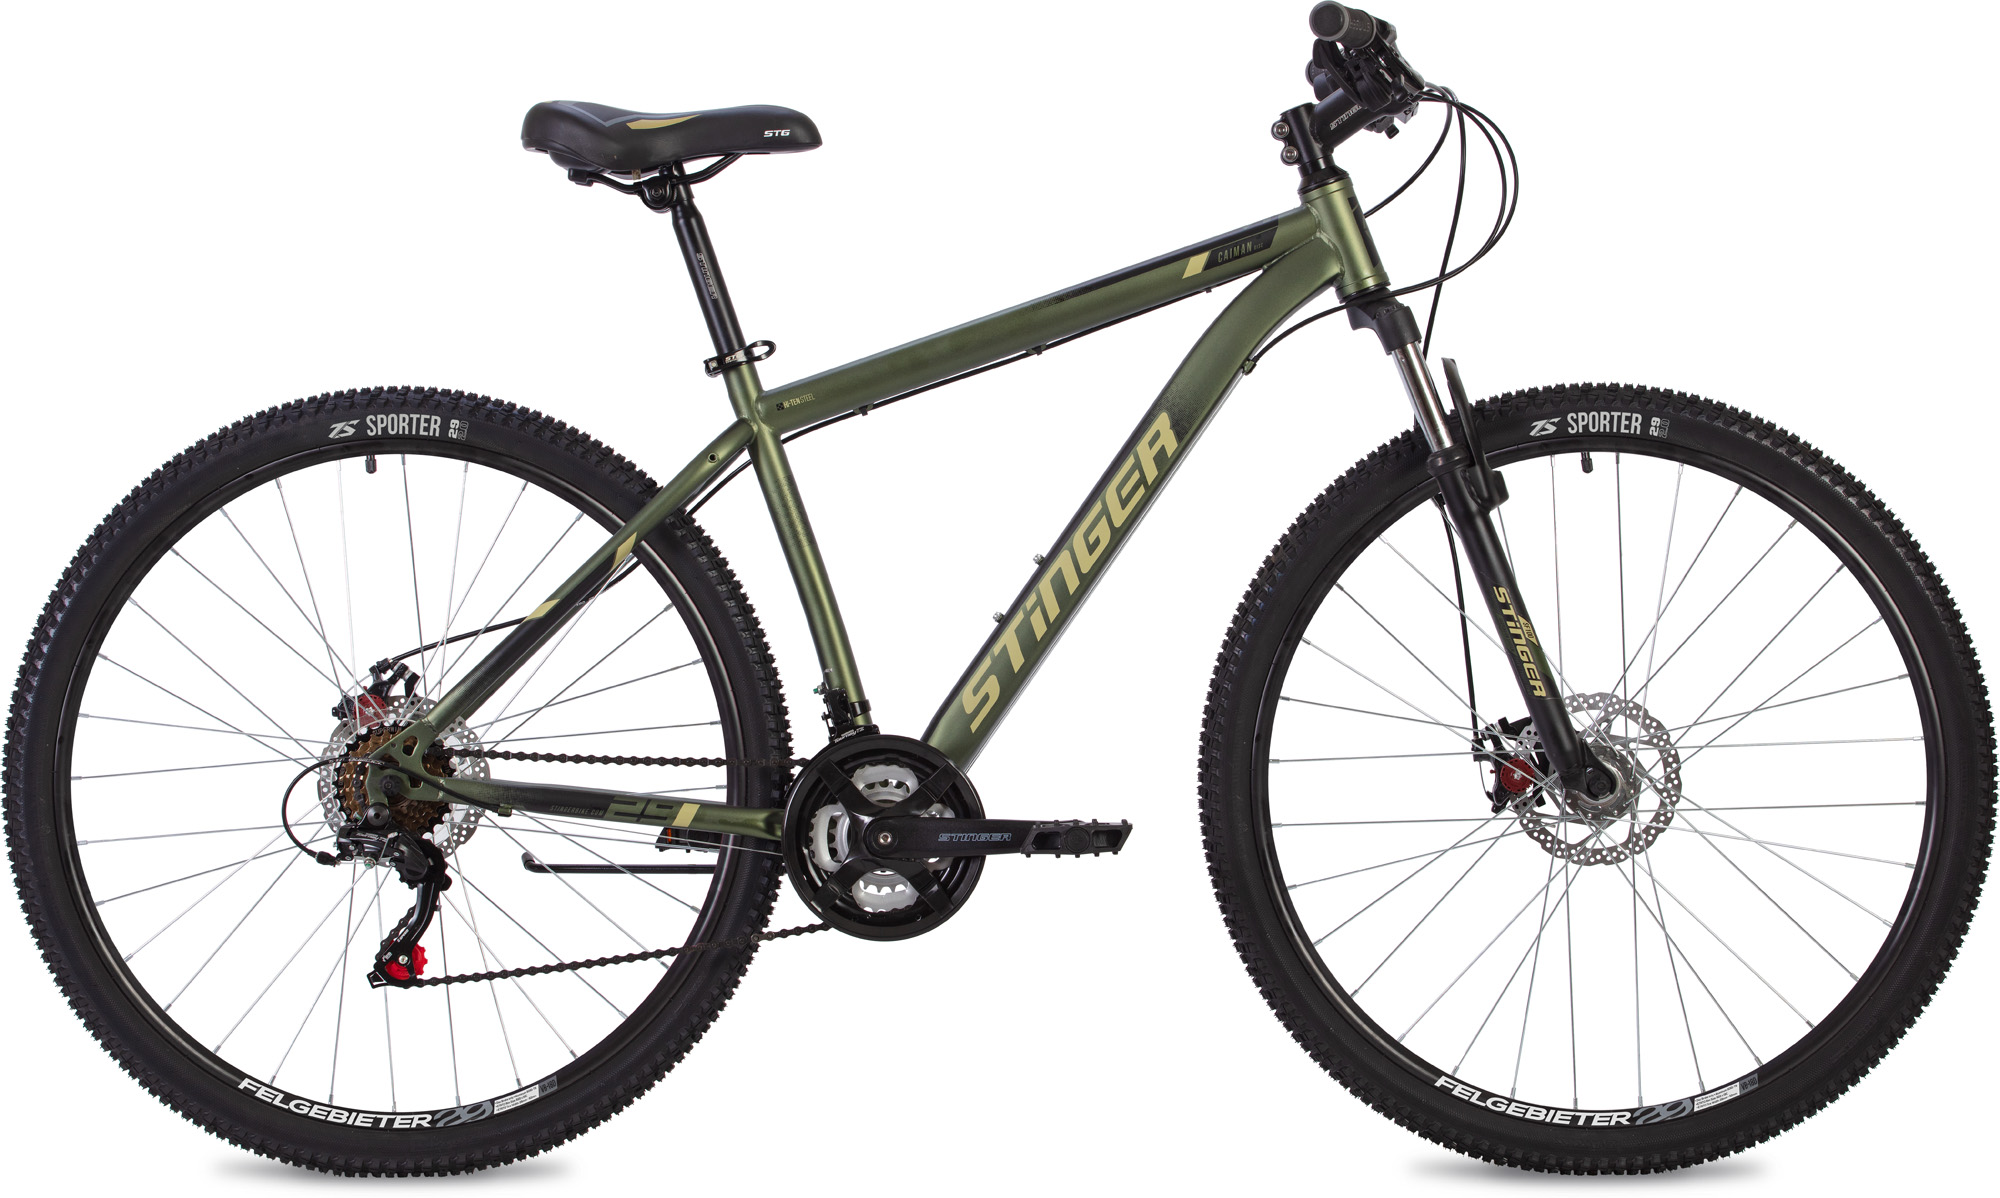  Отзывы о Горном велосипеде Stinger Caiman D 29 2020